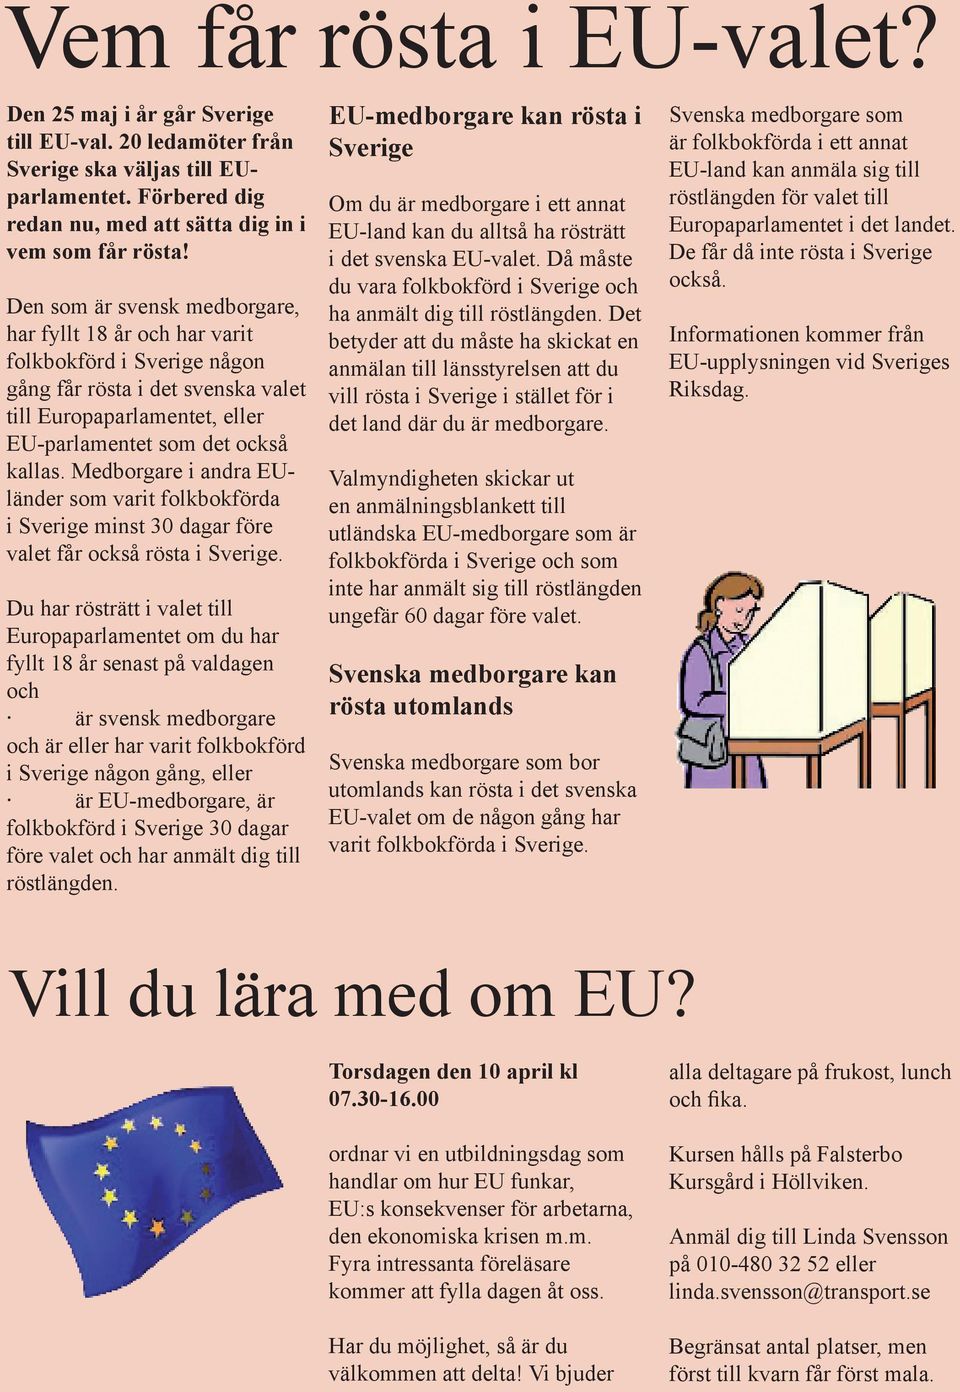 Medborgare i andra EUländer som varit folkbokförda i Sverige minst 30 dagar före valet får också rösta i Sverige.